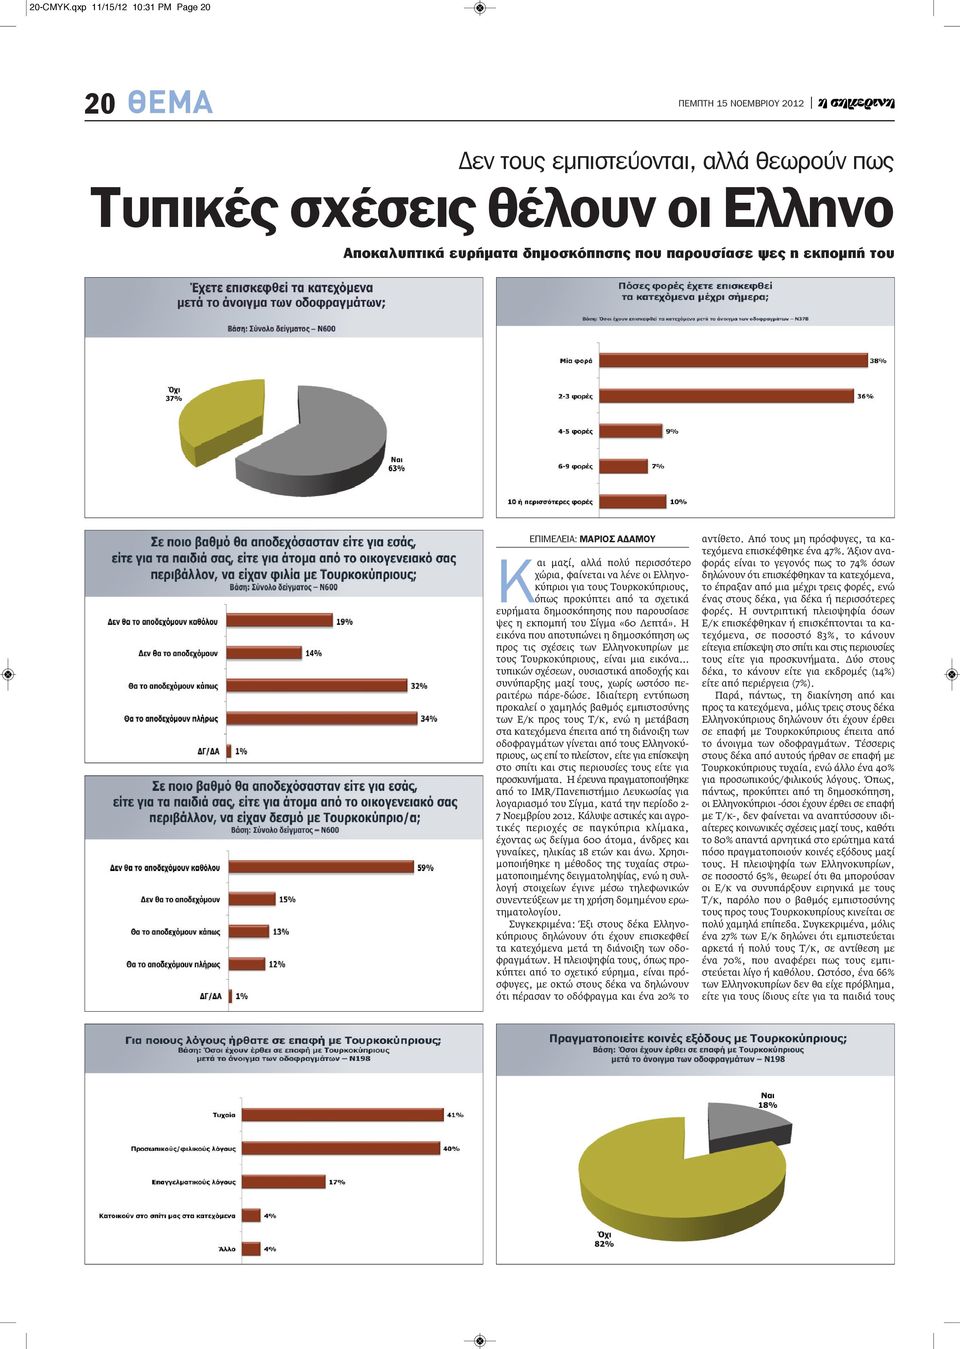 ΑΔΑΜΟΥ Και μαζί, αλλά πολύ περισσότερο χώρια, φαίνεται να λένε οι Ελληνοκύπριοι για τους Τουρκοκύπριους, όπως προκύπτει από τα σχετικά ευρήματα δημοσκόπησης που παρουσίασε ψες η εκπομπή του Σίγμα «60